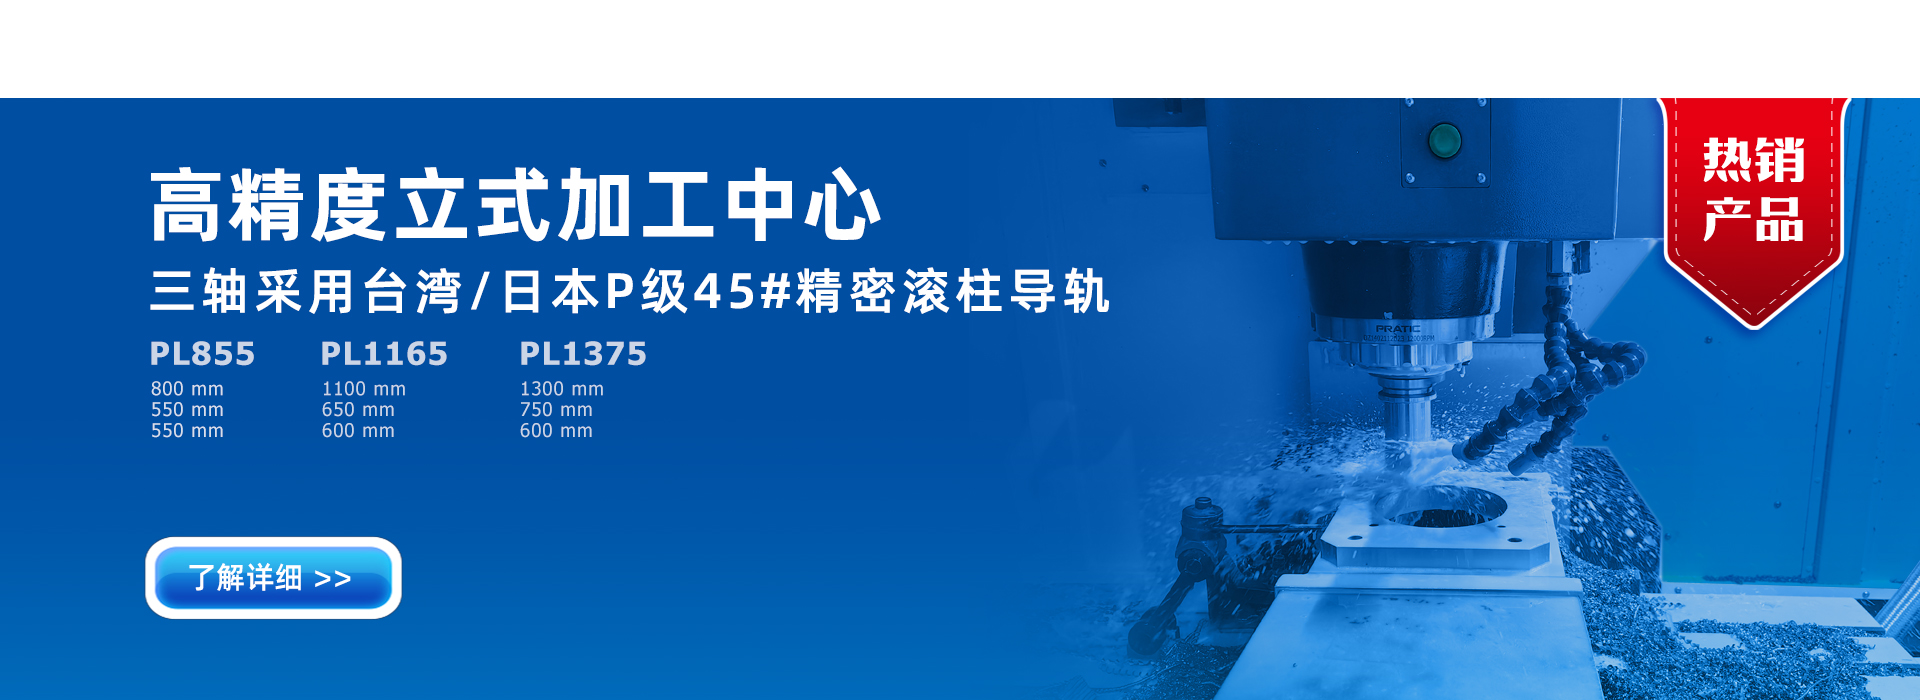 betway必威(中国)官方网站加工中心首页幻灯片